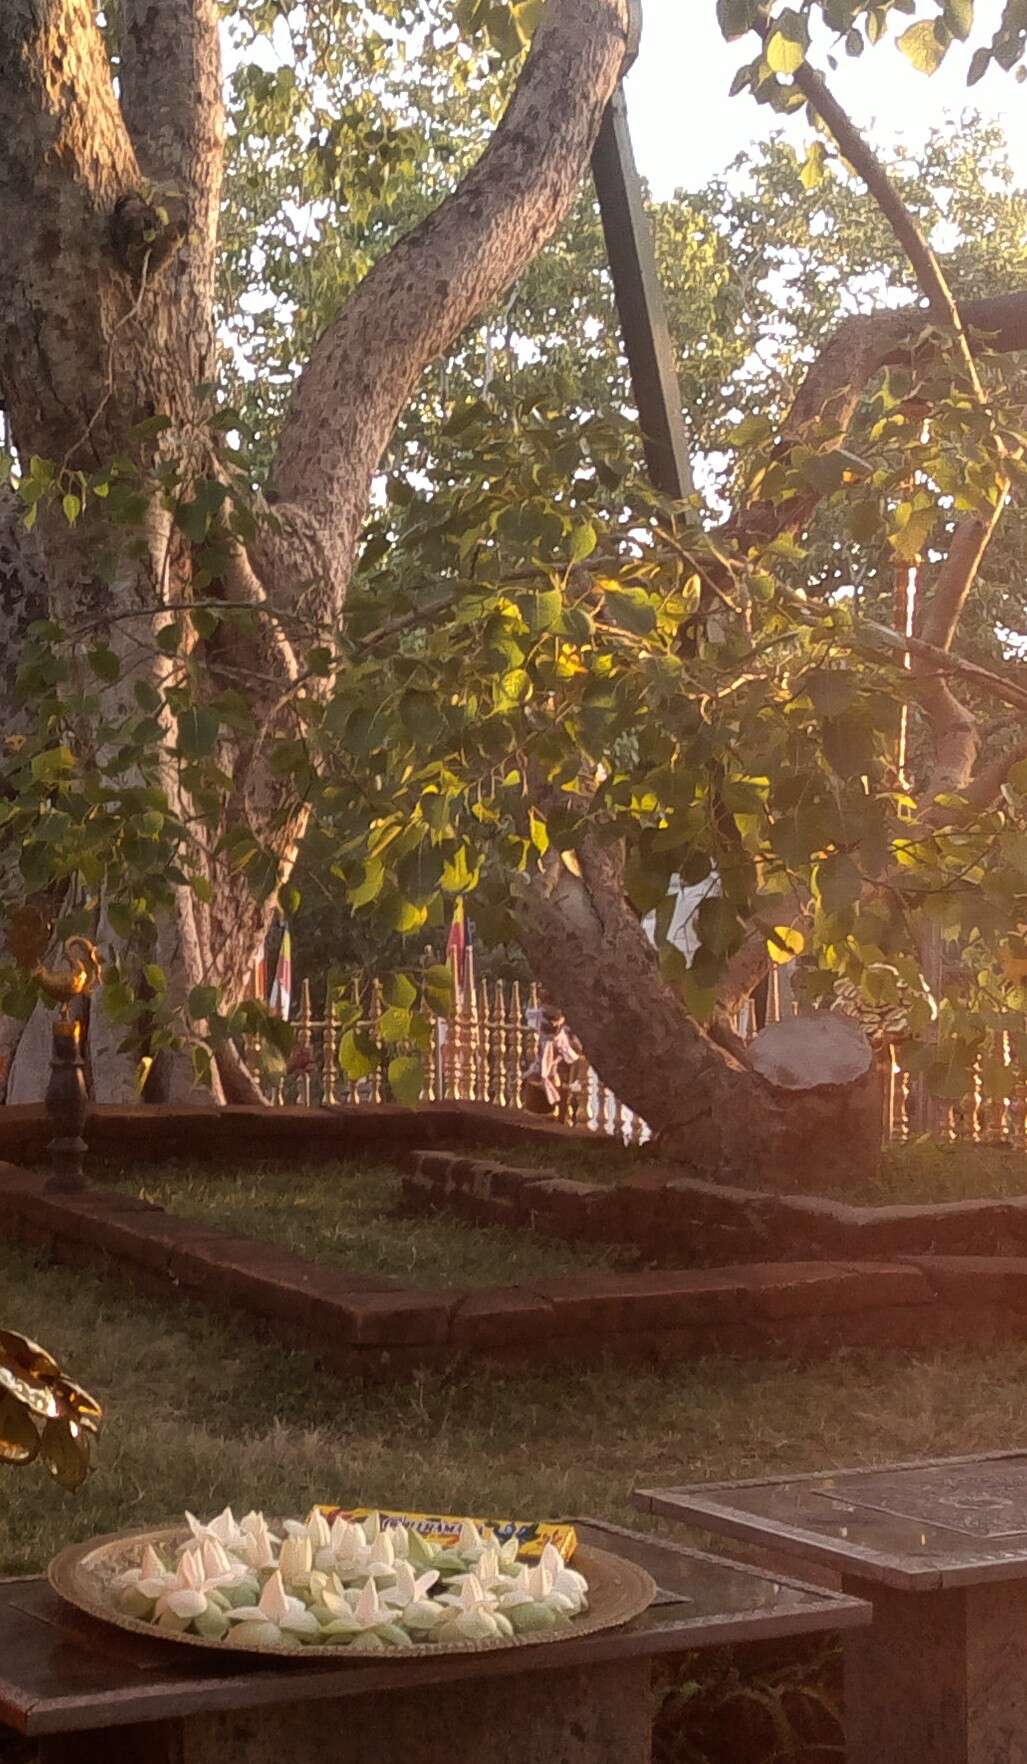 Image of peepul tree